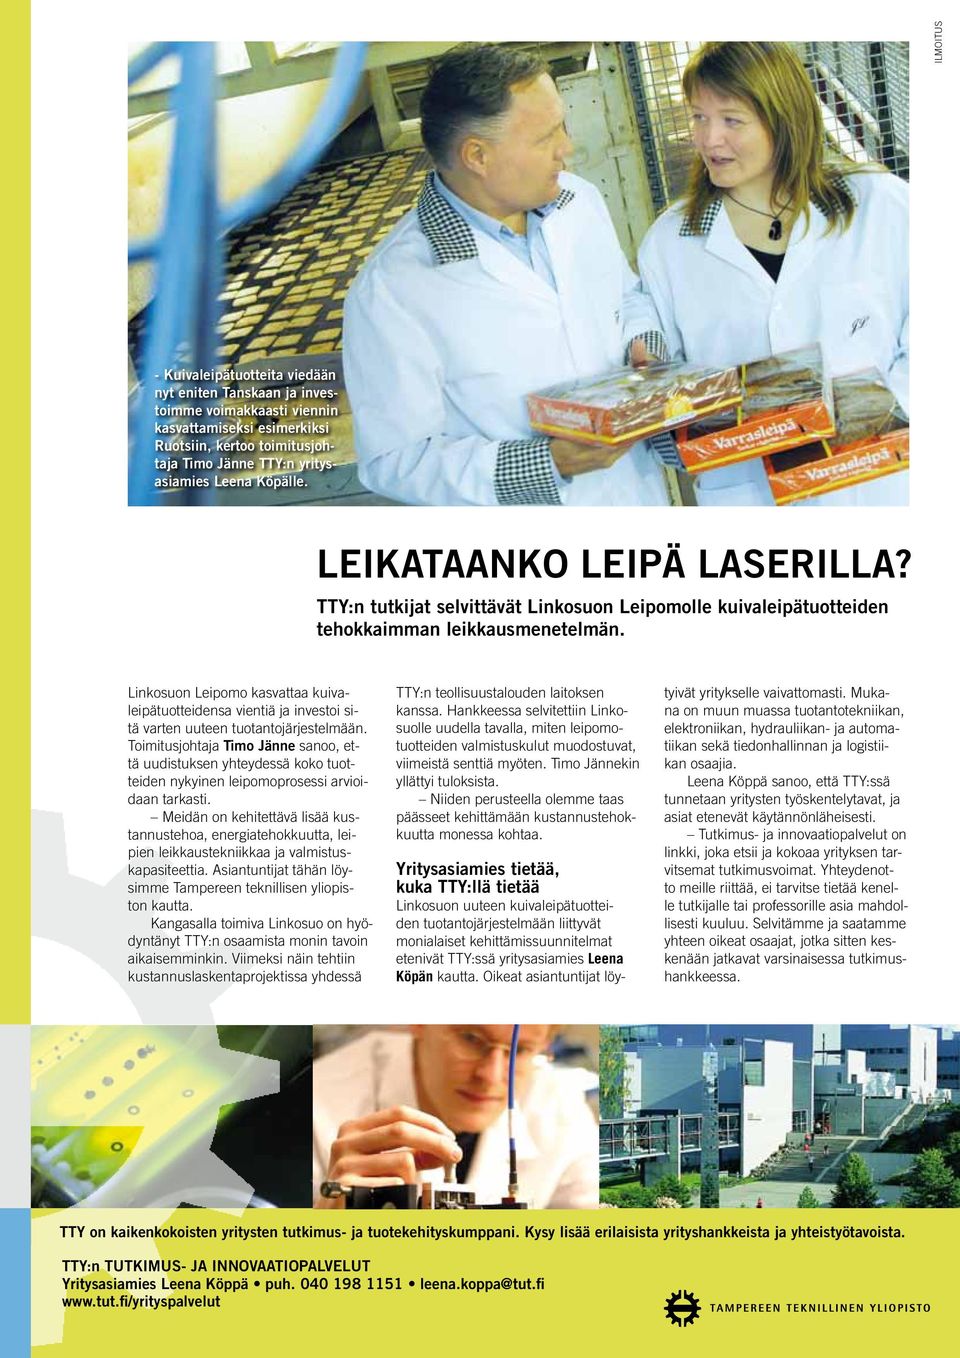 Linkosuon Leipomo kasvattaa kuivaleipätuotteidensa vientiä ja investoi sitä varten uuteen tuotantojärjestelmään.